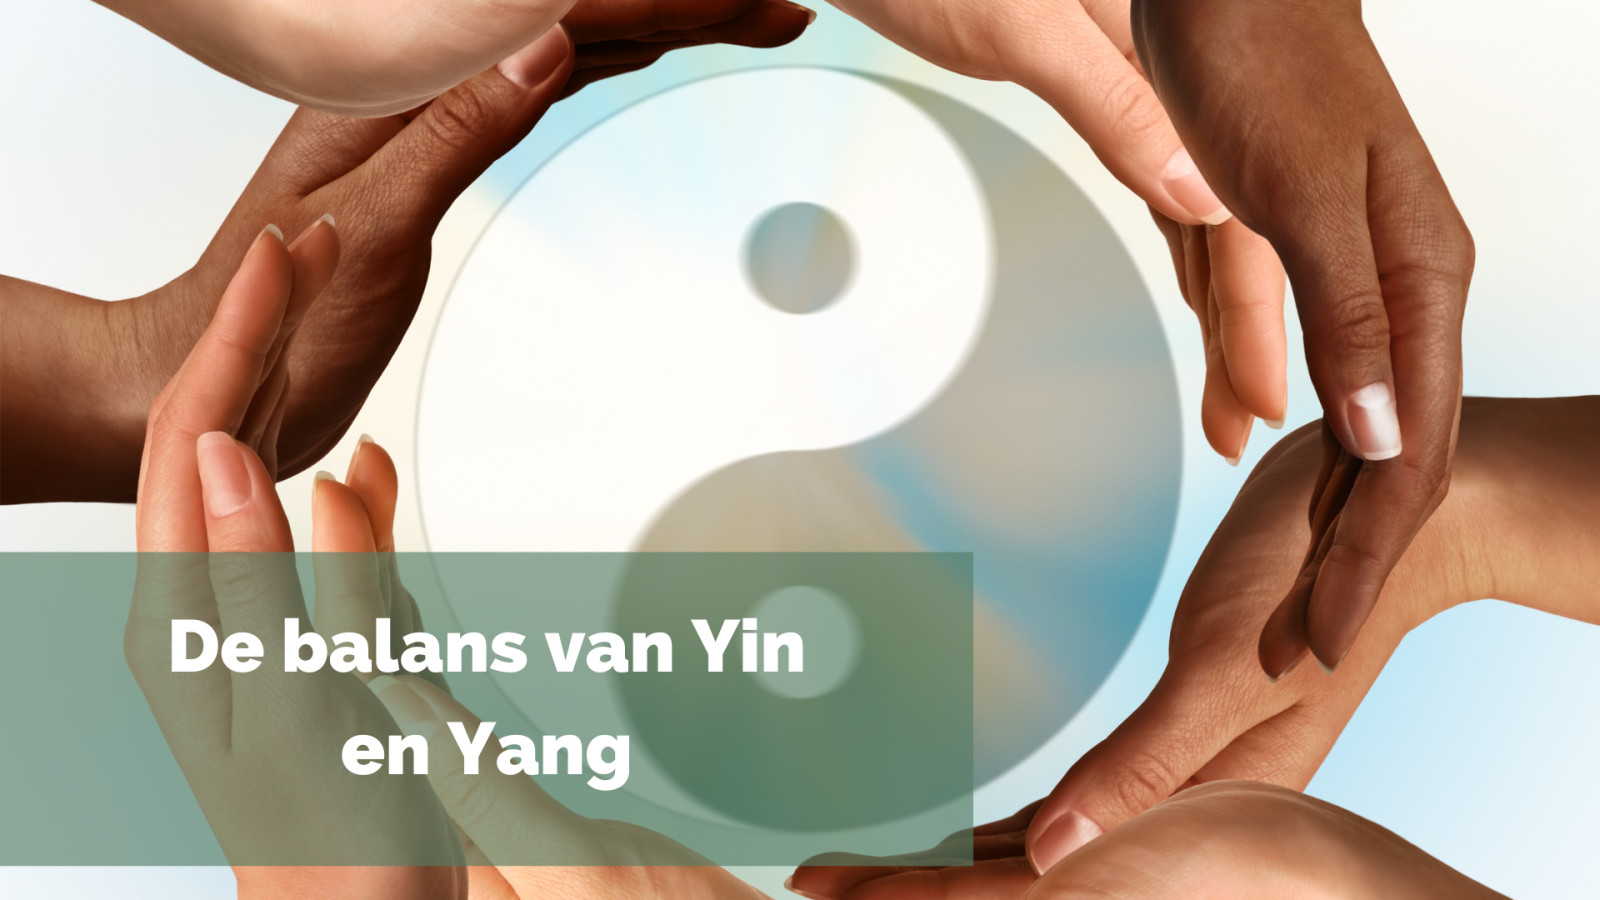 De balans van Yin en Yang